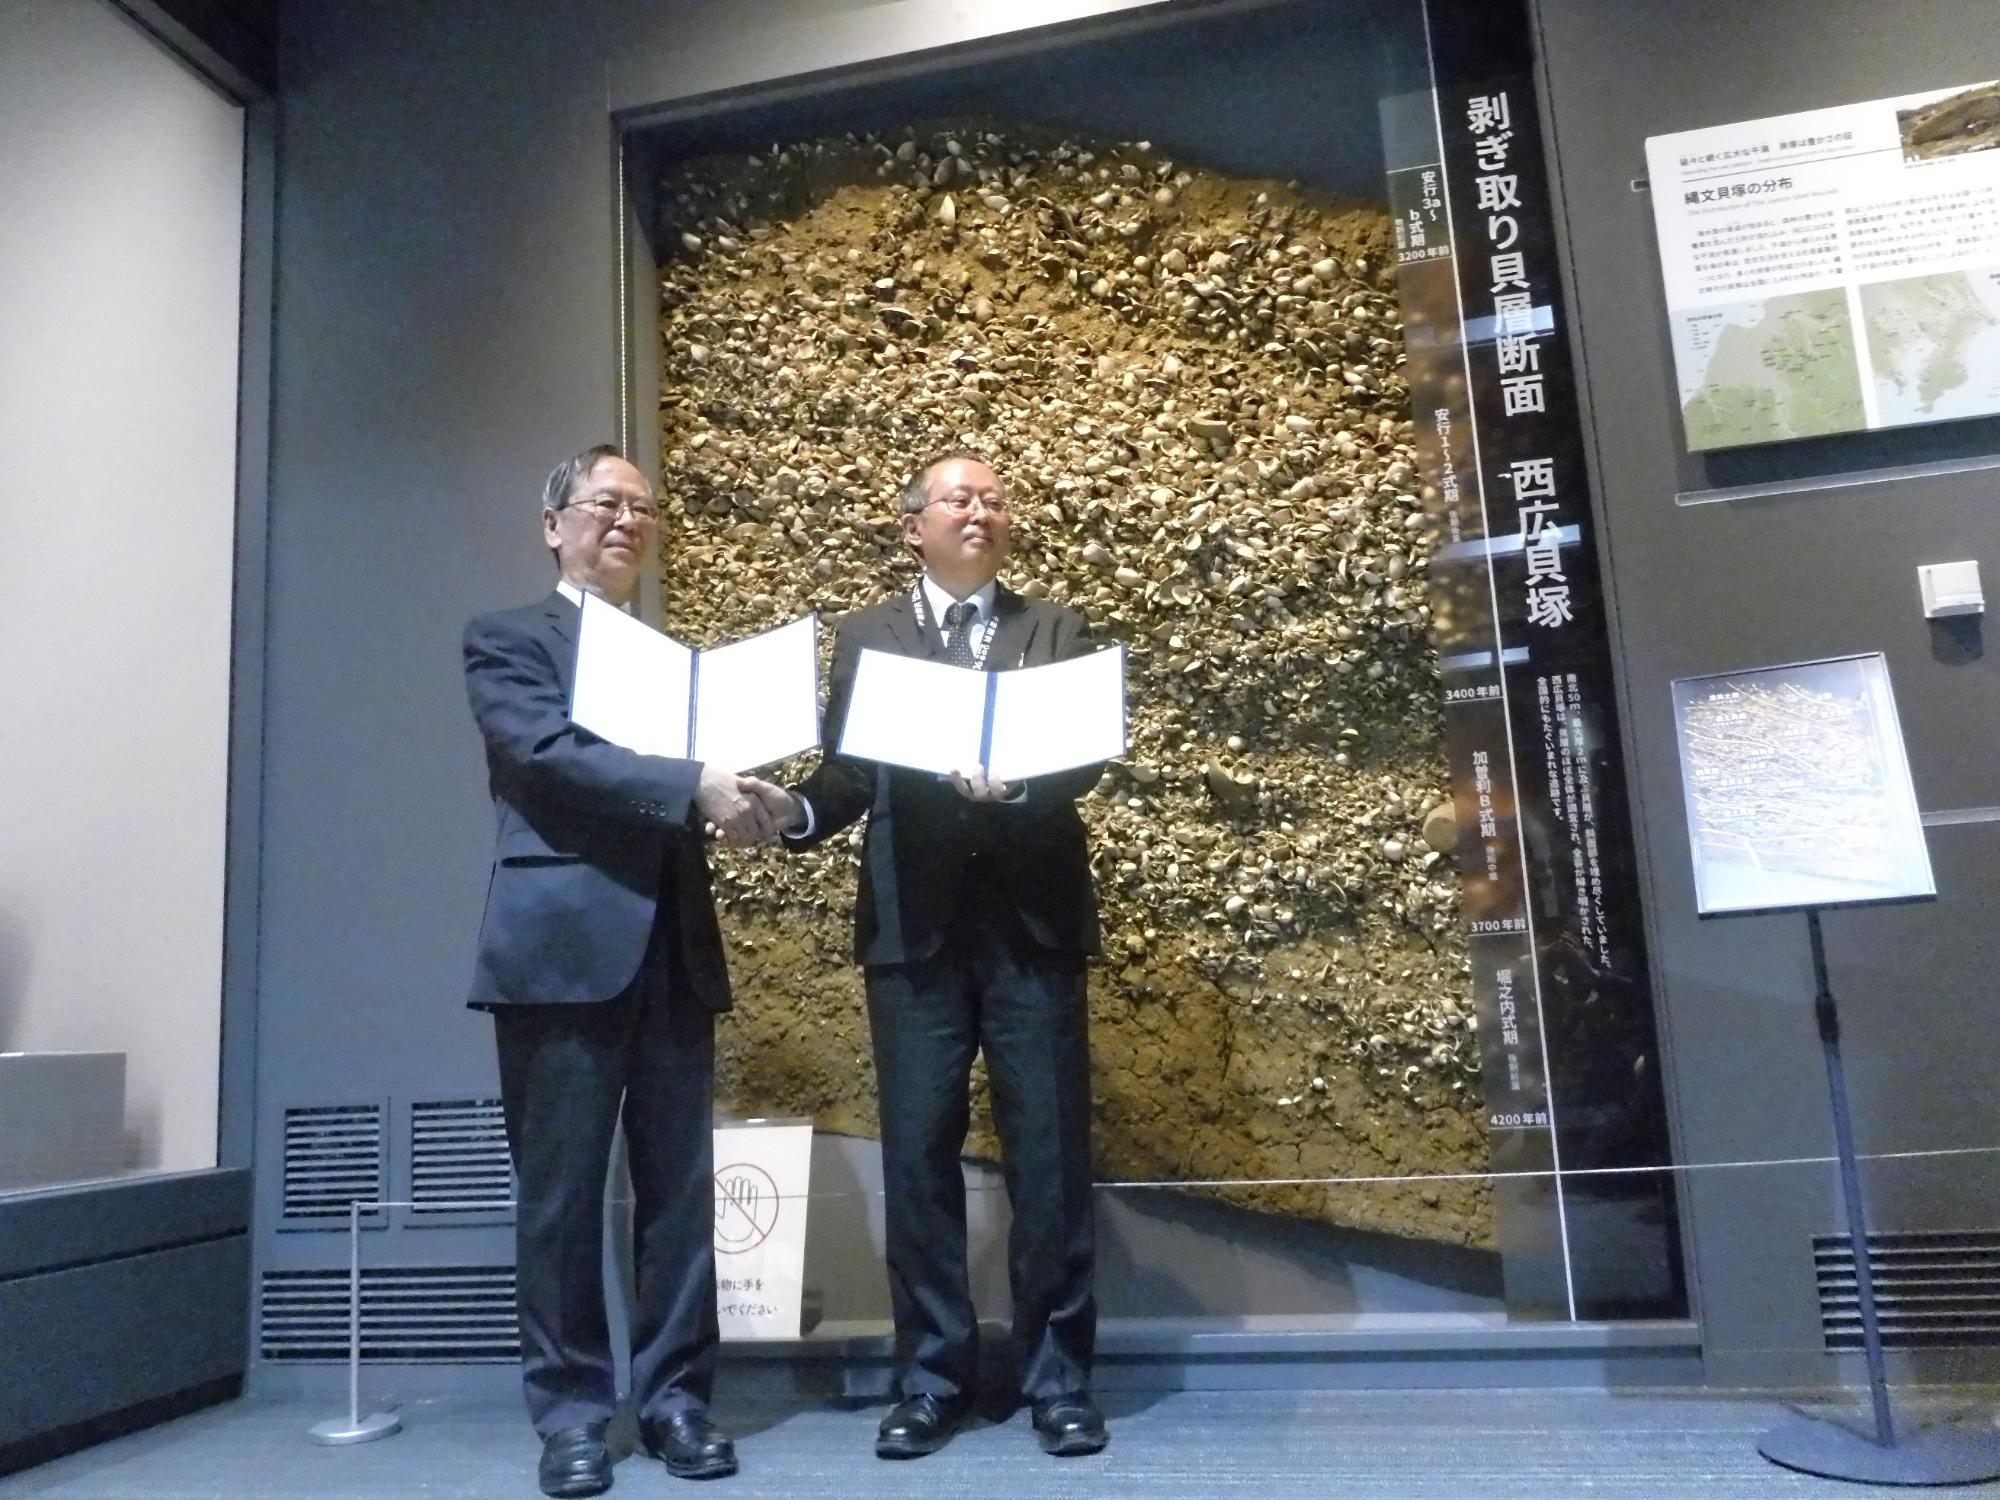 加曽利貝塚博物館と市原歴史博物館の館長による連携協定記念写真